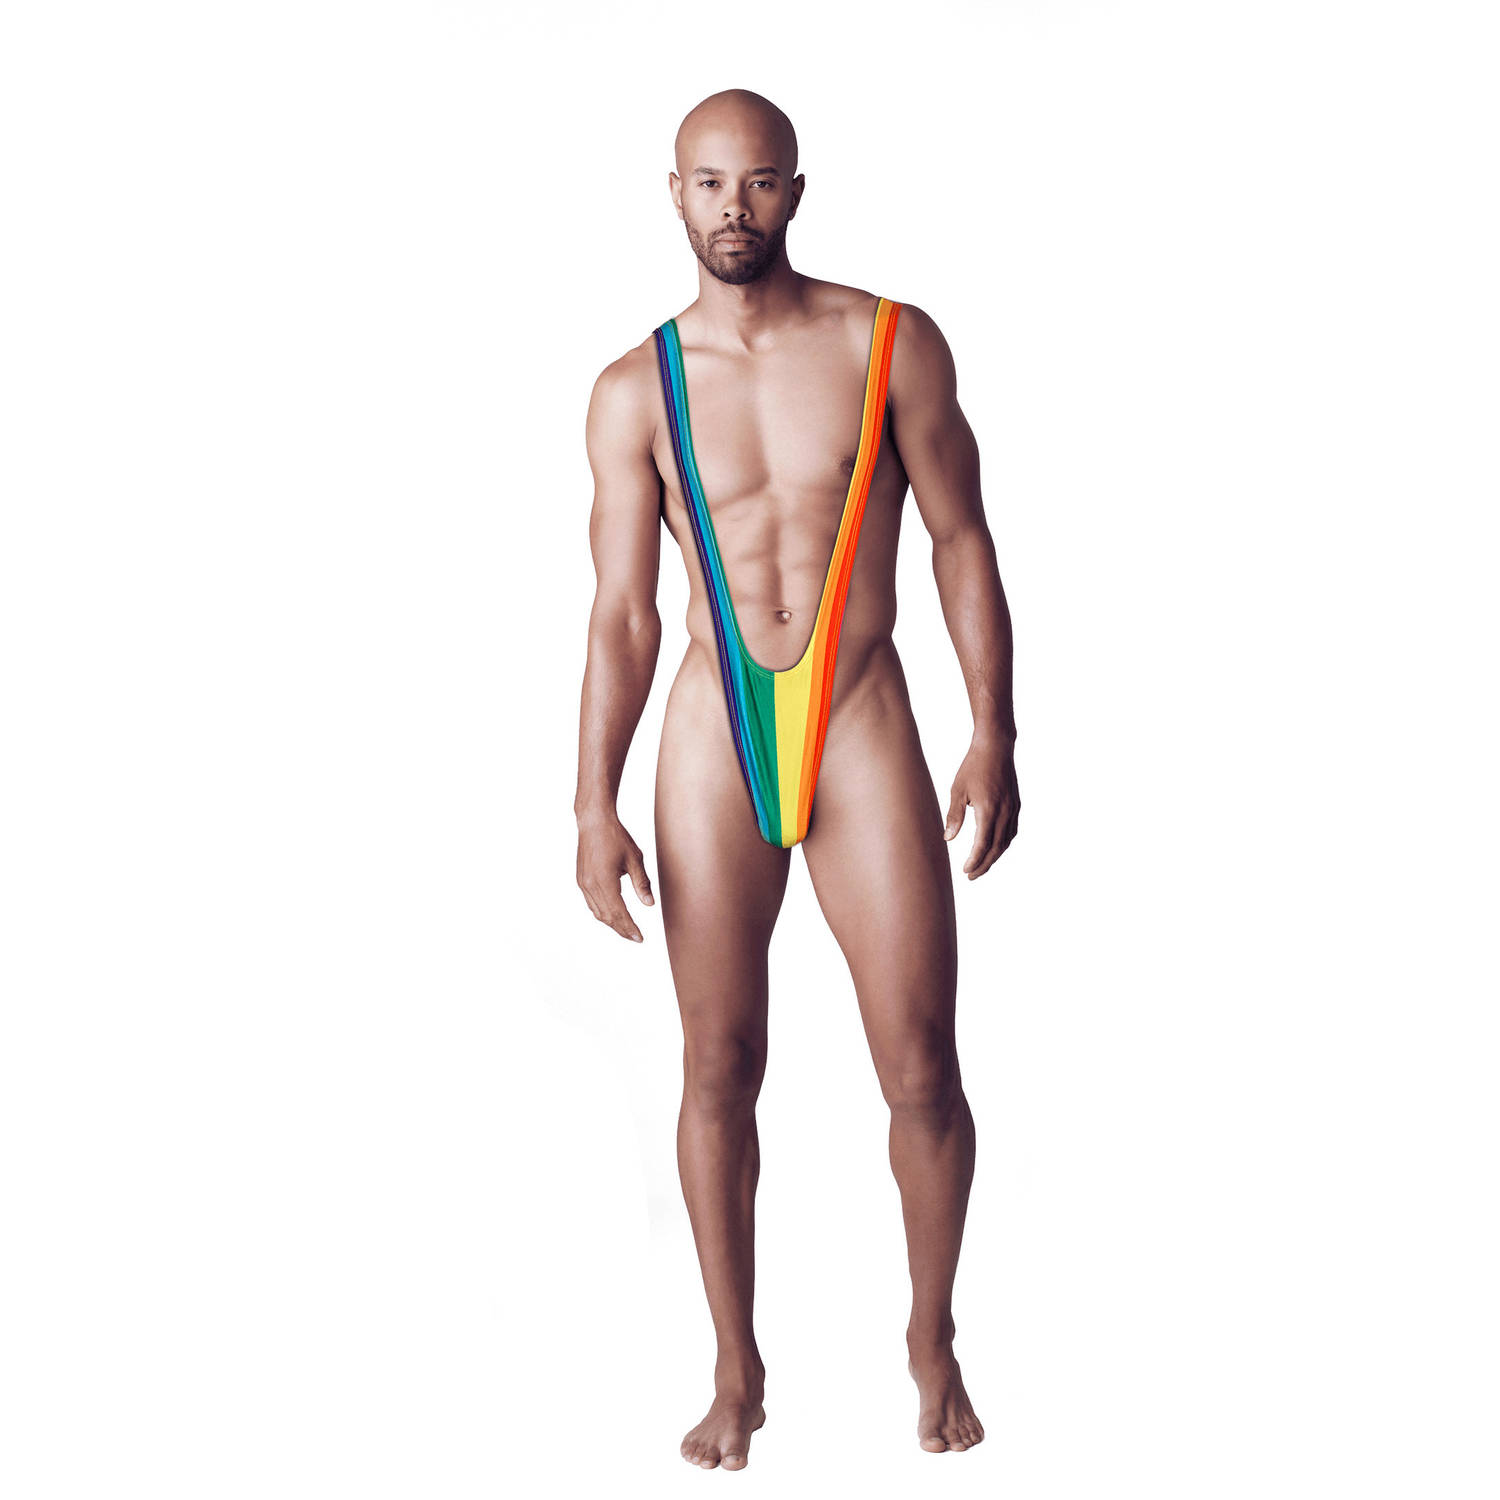 Mankini onderbroek - Gay Pride/regenboog thema kleuren - polyester - in kadoverpakking - Verkleedattributen